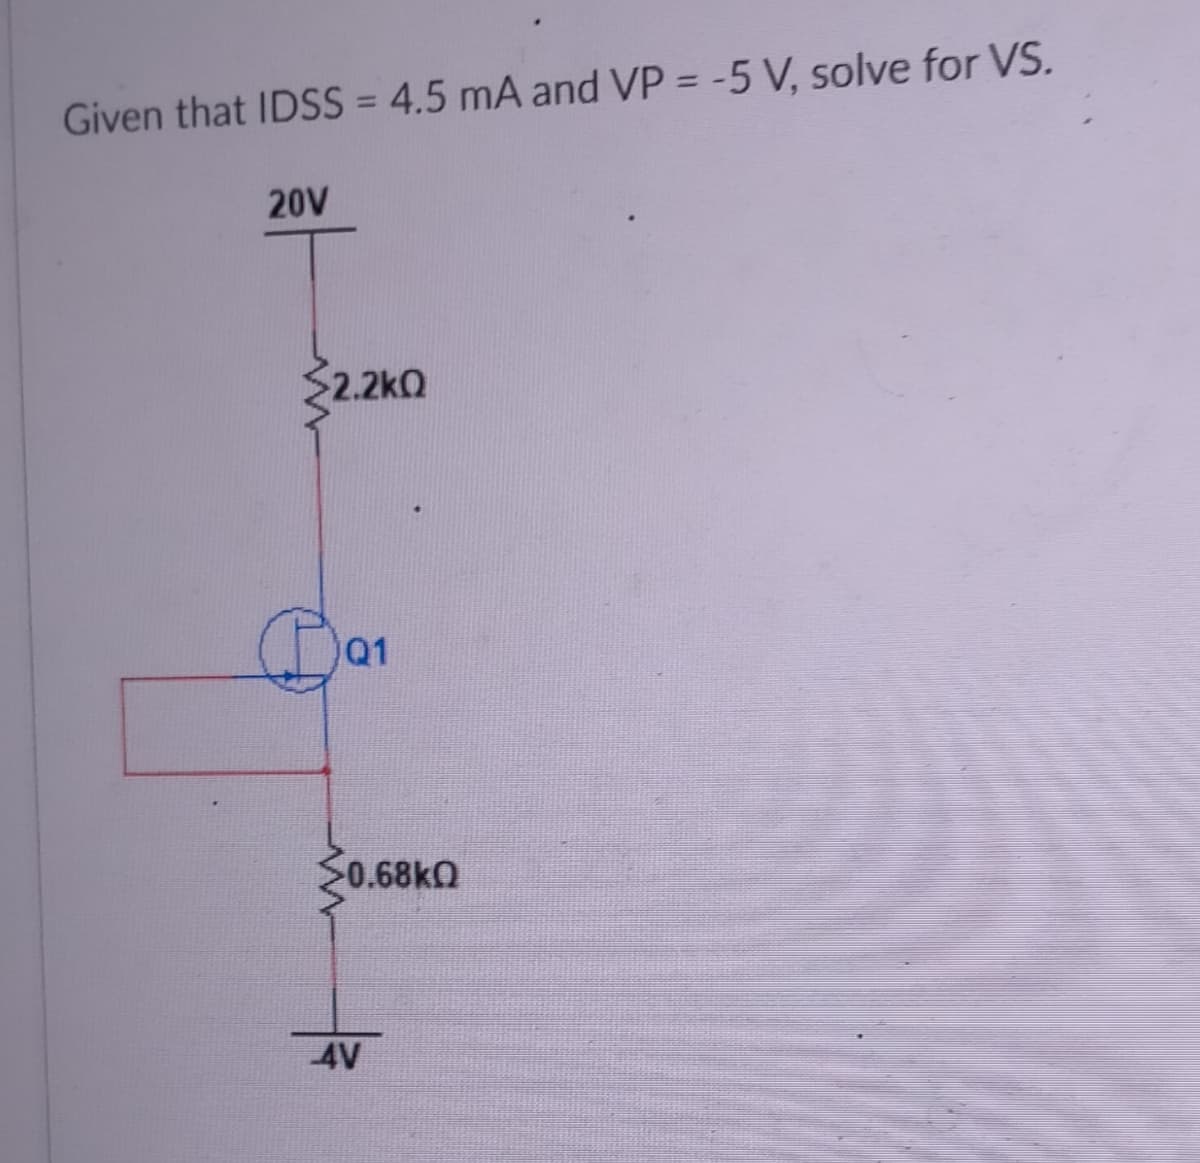 Given that IDSS = 4.5 mA and VP = -5 V, solve for VS.
%3D
20V
S2.2kQ
Q1
0.68KO
4V
